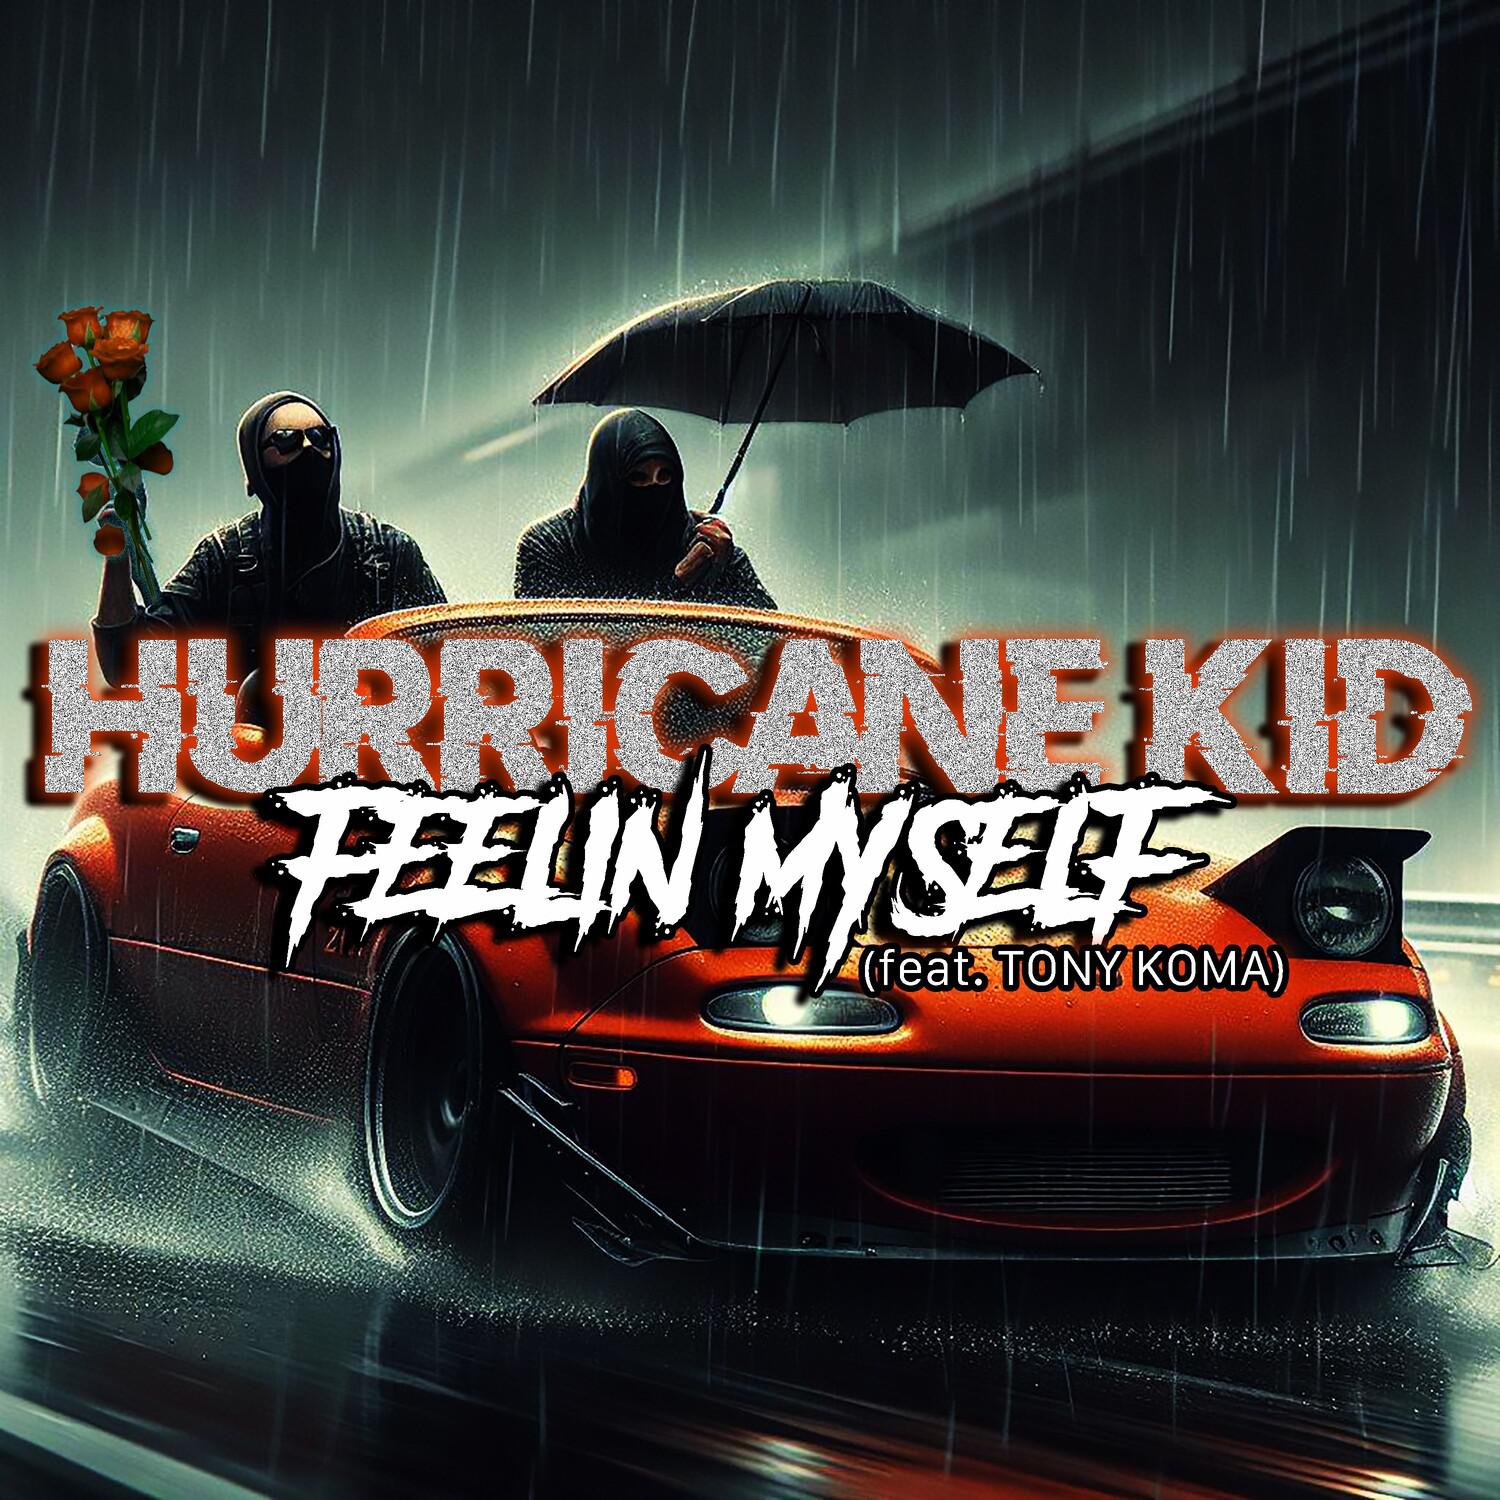 The Hurricane Kid - FEELING MYSELF